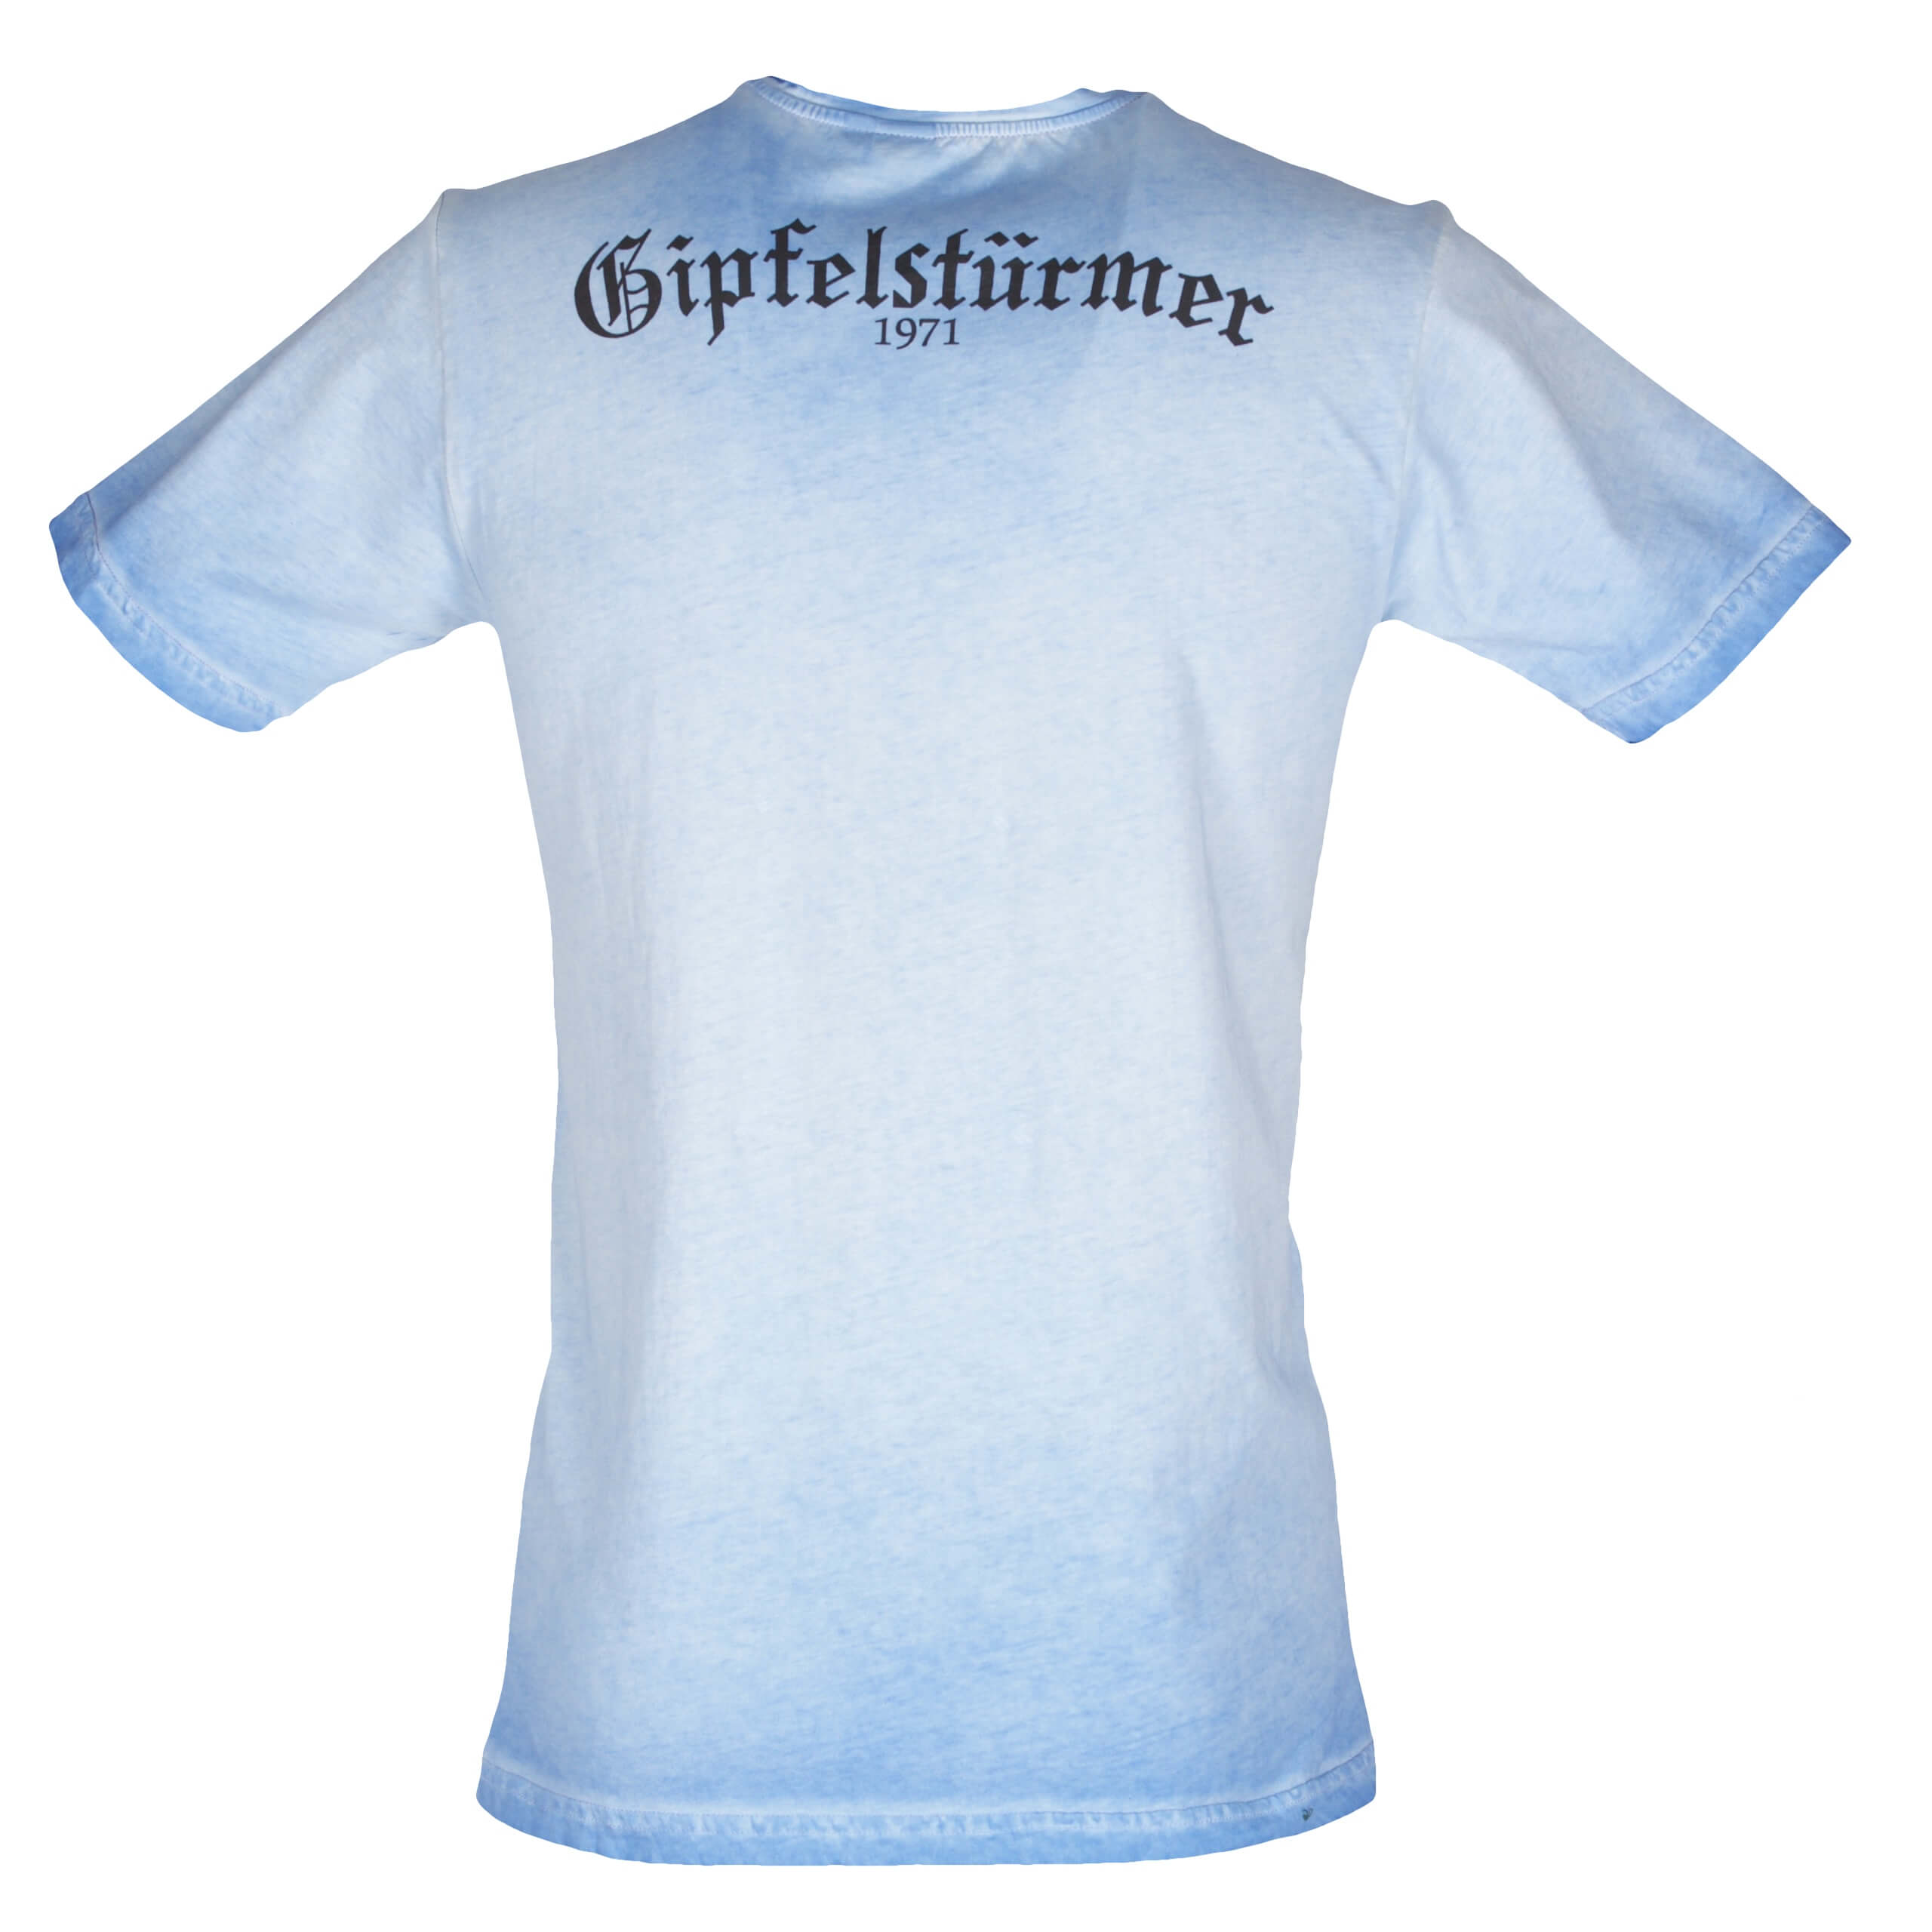 Orbis Herren T-Shirt 428002 3737 Gr S blau Fb 43